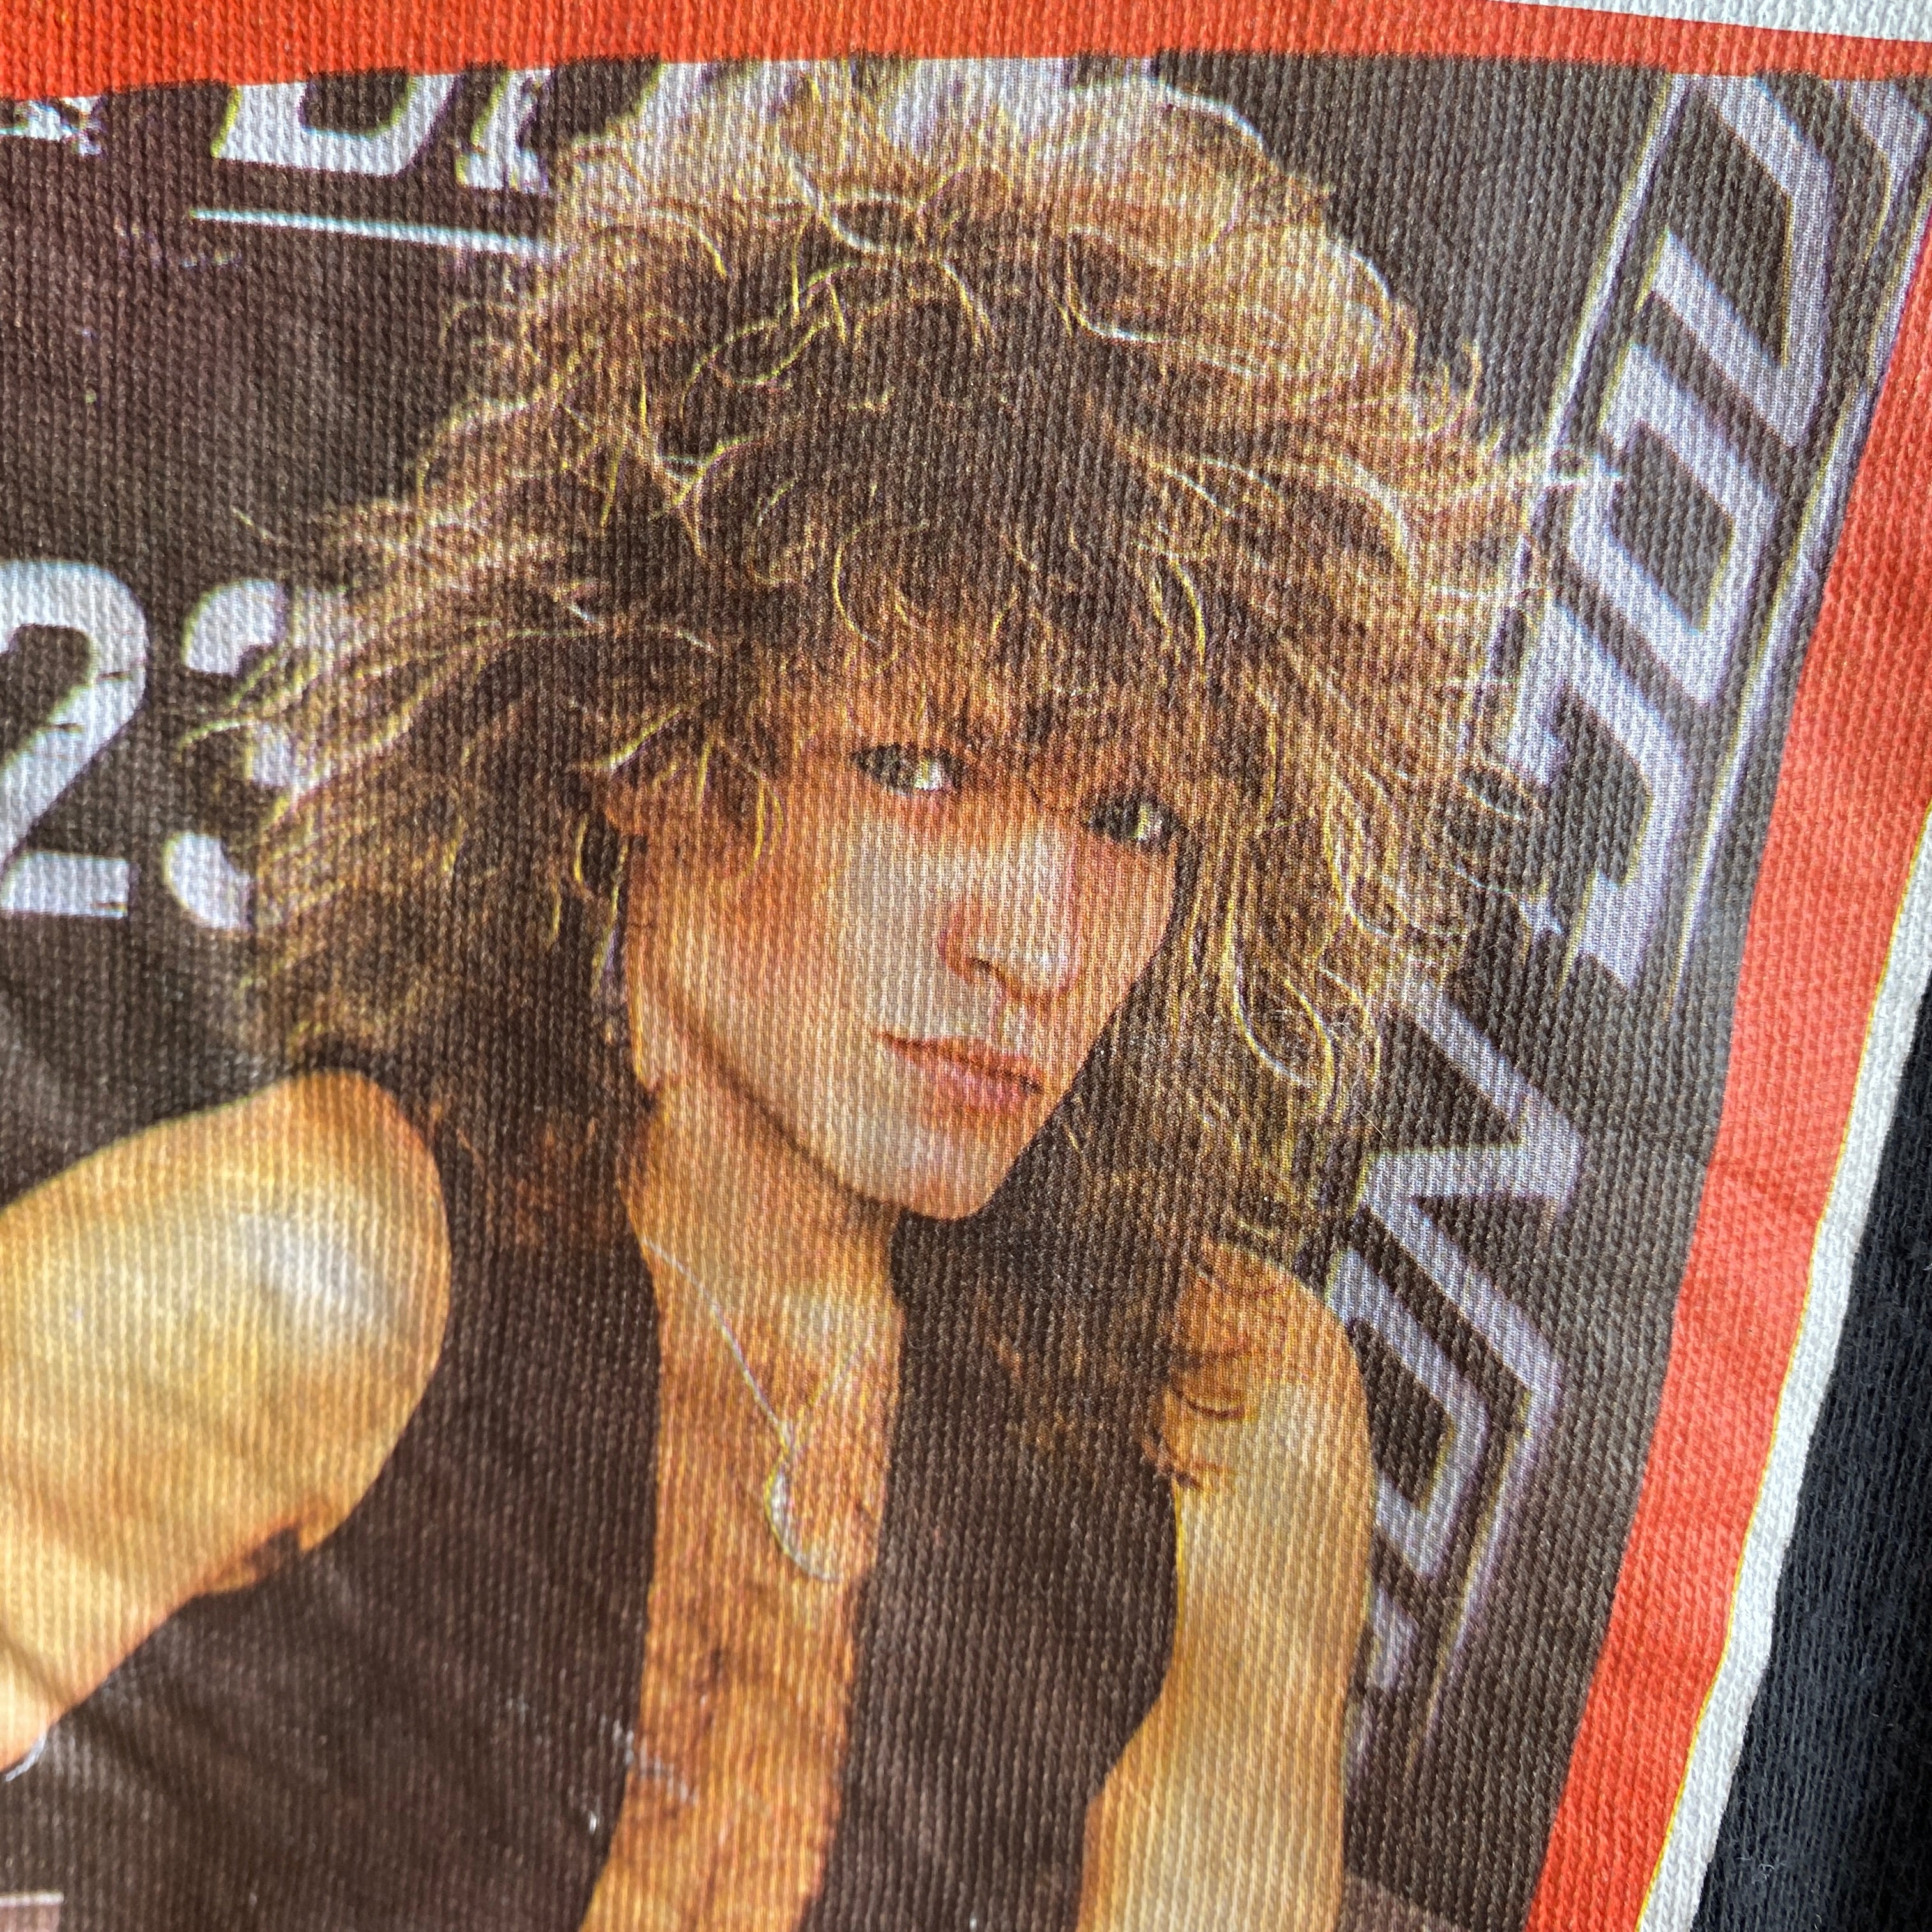 T-shirt de baseball Bon Jovi EXTRA SUPER RARE des années 1980 qui n'a pas besoin d'être présenté